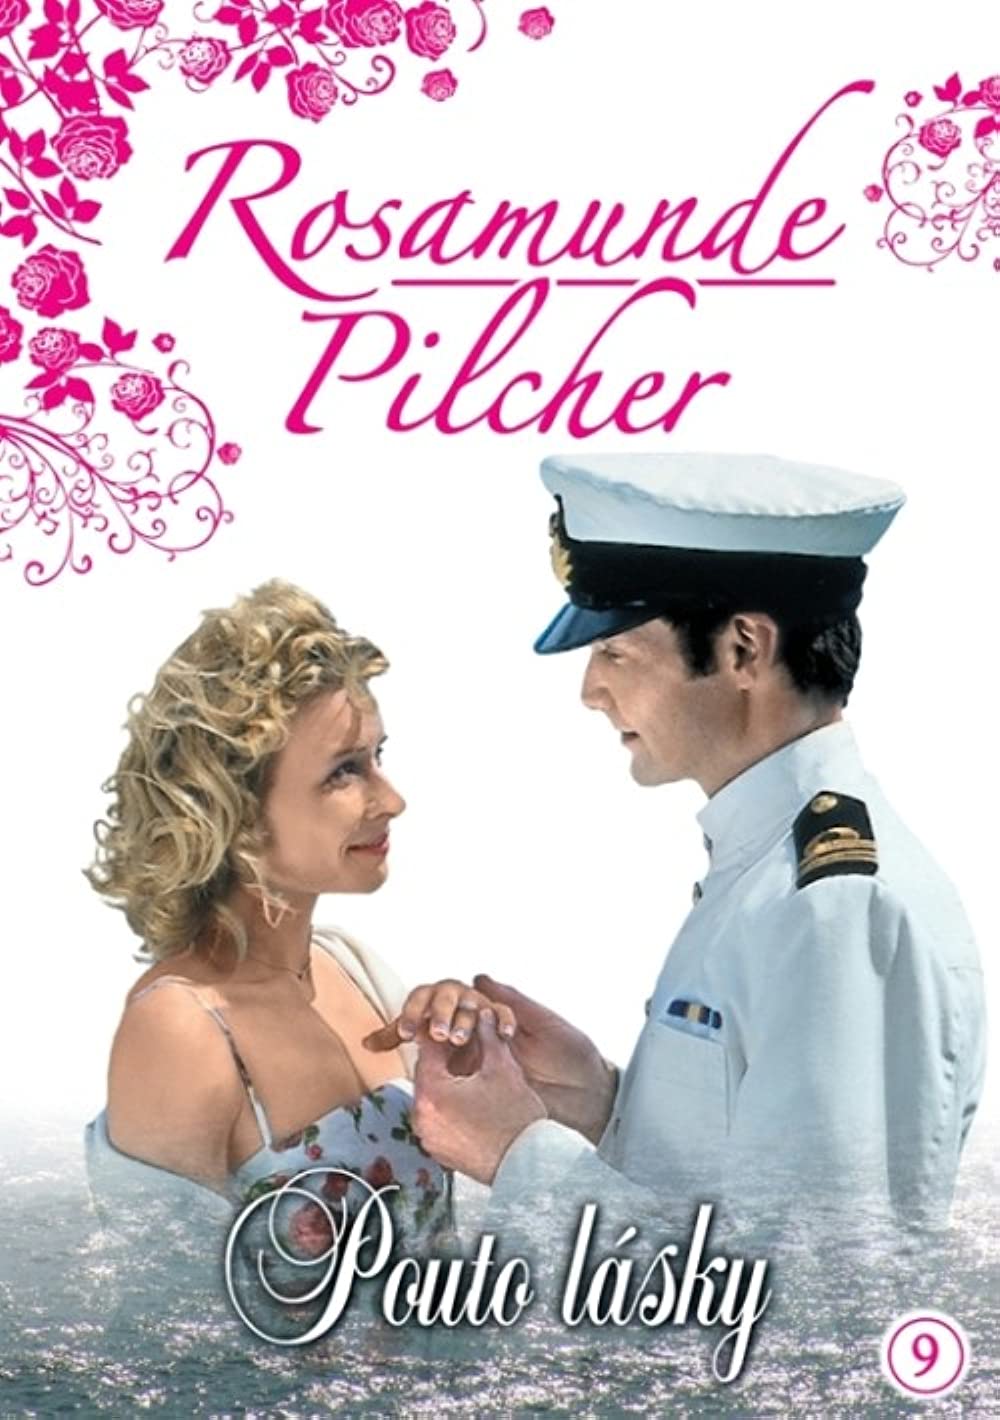     Rosamunde Pilcher